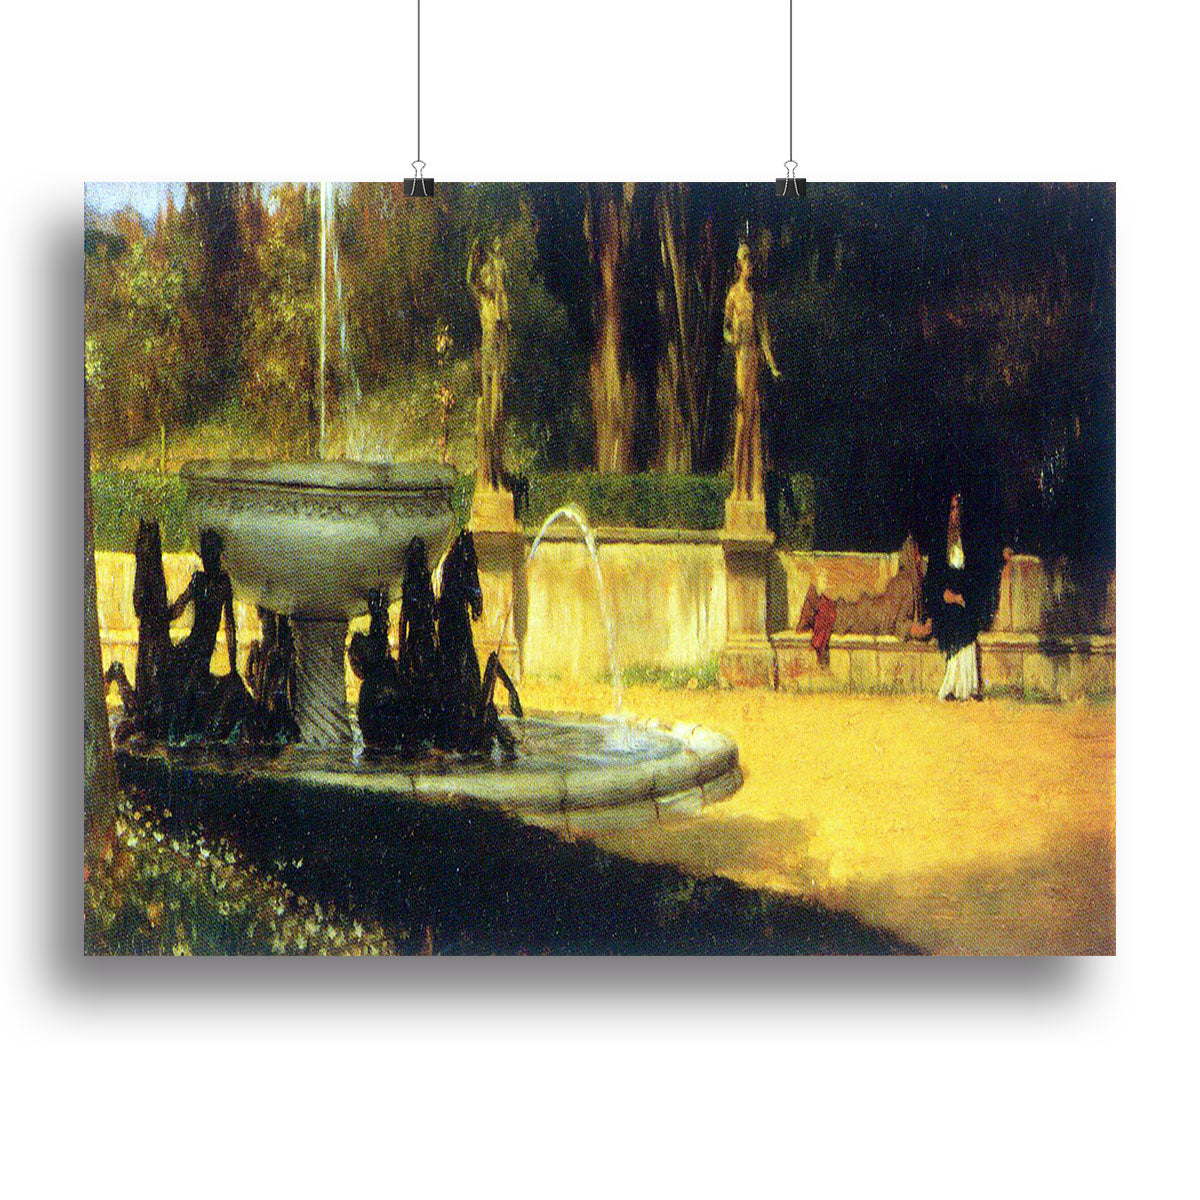 Roman Garden by Alma Tadema Canvas Print or Poster - Canvas Art Rocks - 2